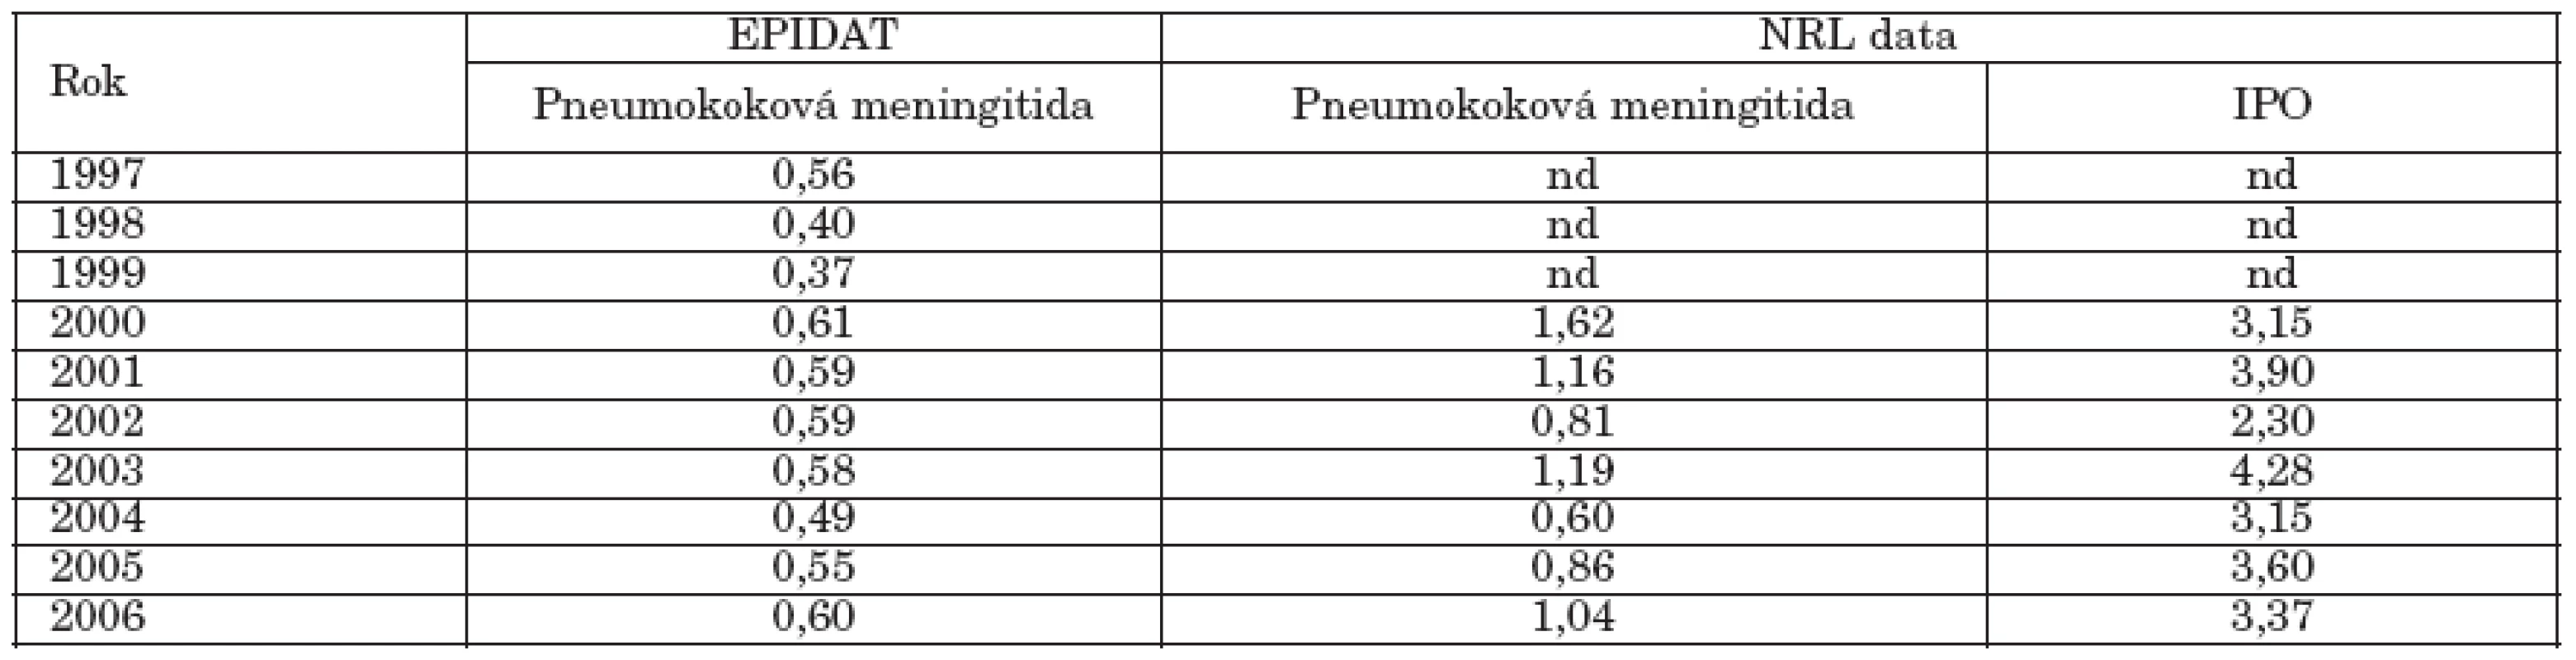 Pneumokoková meningitida a invazivní pneumokokové onemocnění Česká republika, 1997-2006, nemocnost na 100 000 (EPIDAT, data NRL)
Table 1. Pneumococcal meningitis and invasive pneumococcal disease in the Czech Republic, 1997-2006, incidence per 100 000 population (EPIDAT, NRL data)